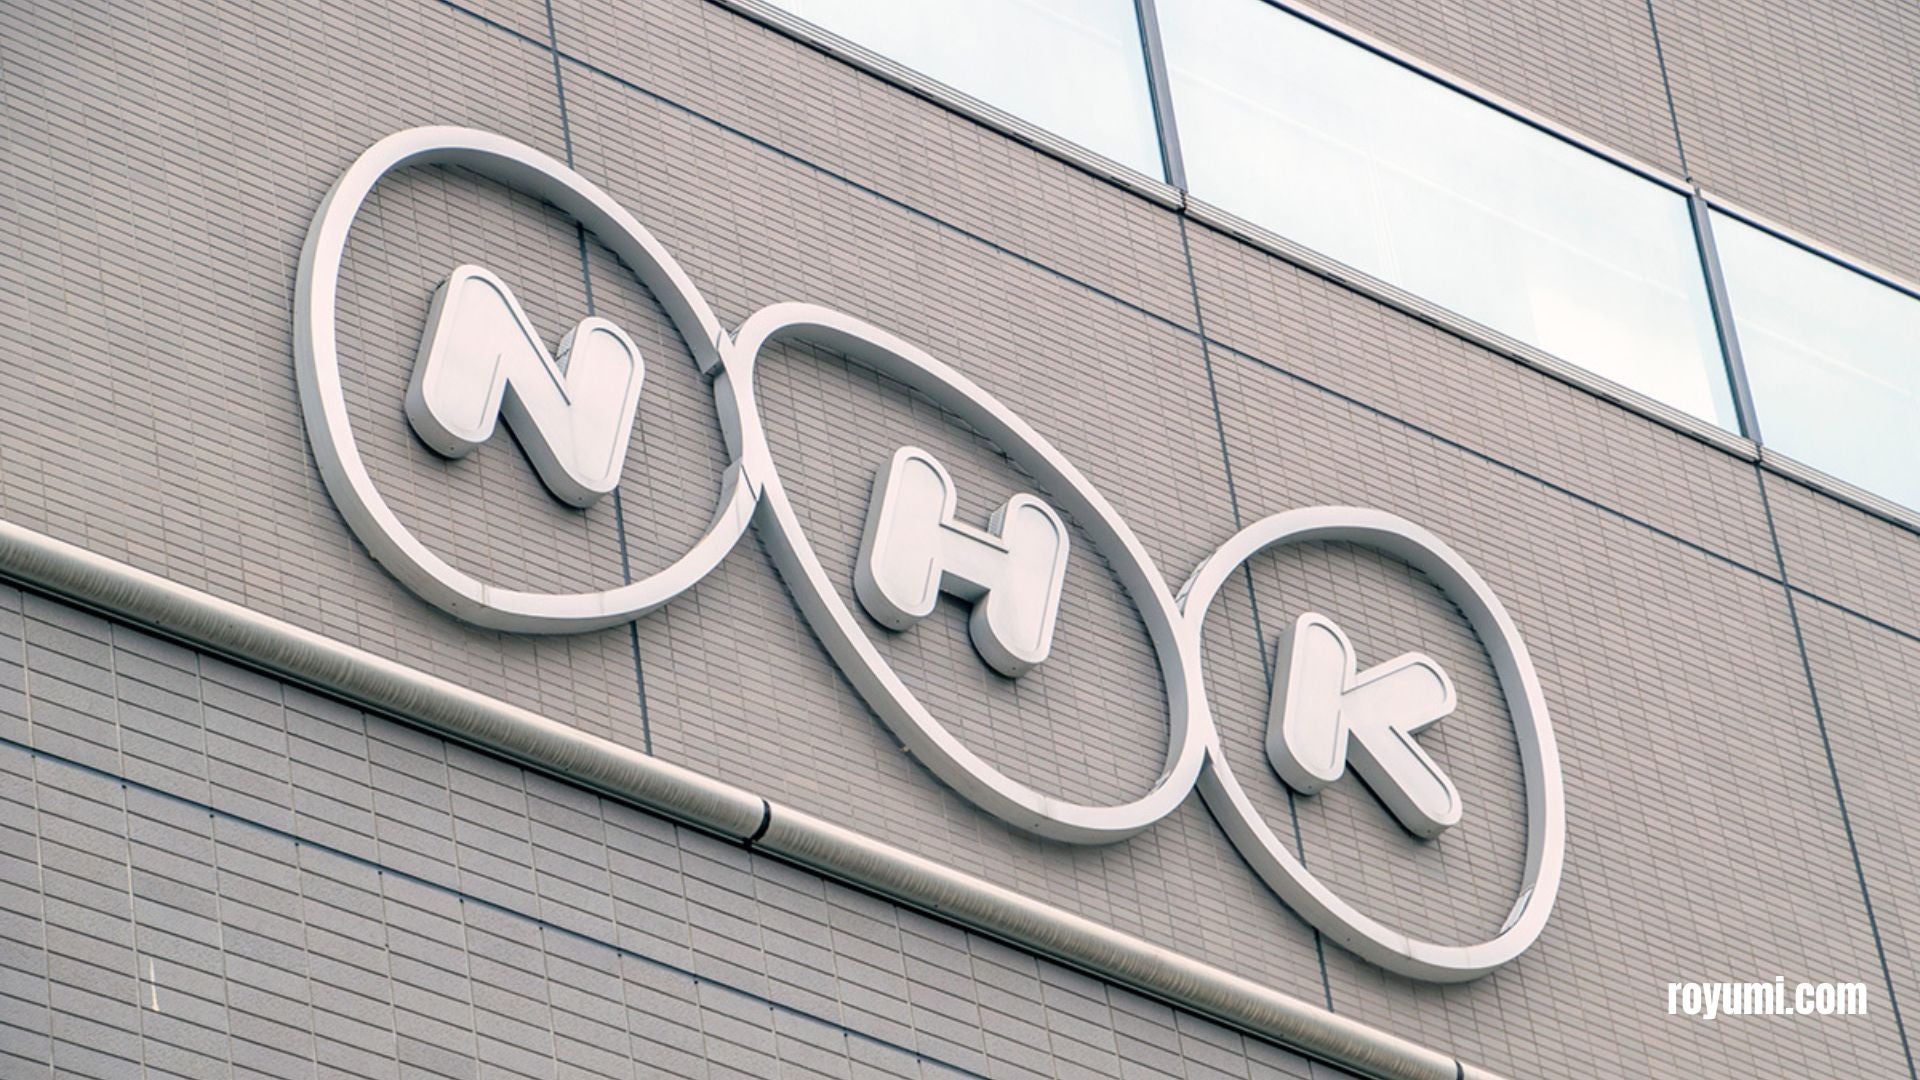 その理由を解読する: 日本の NHK に対する信頼の喪失